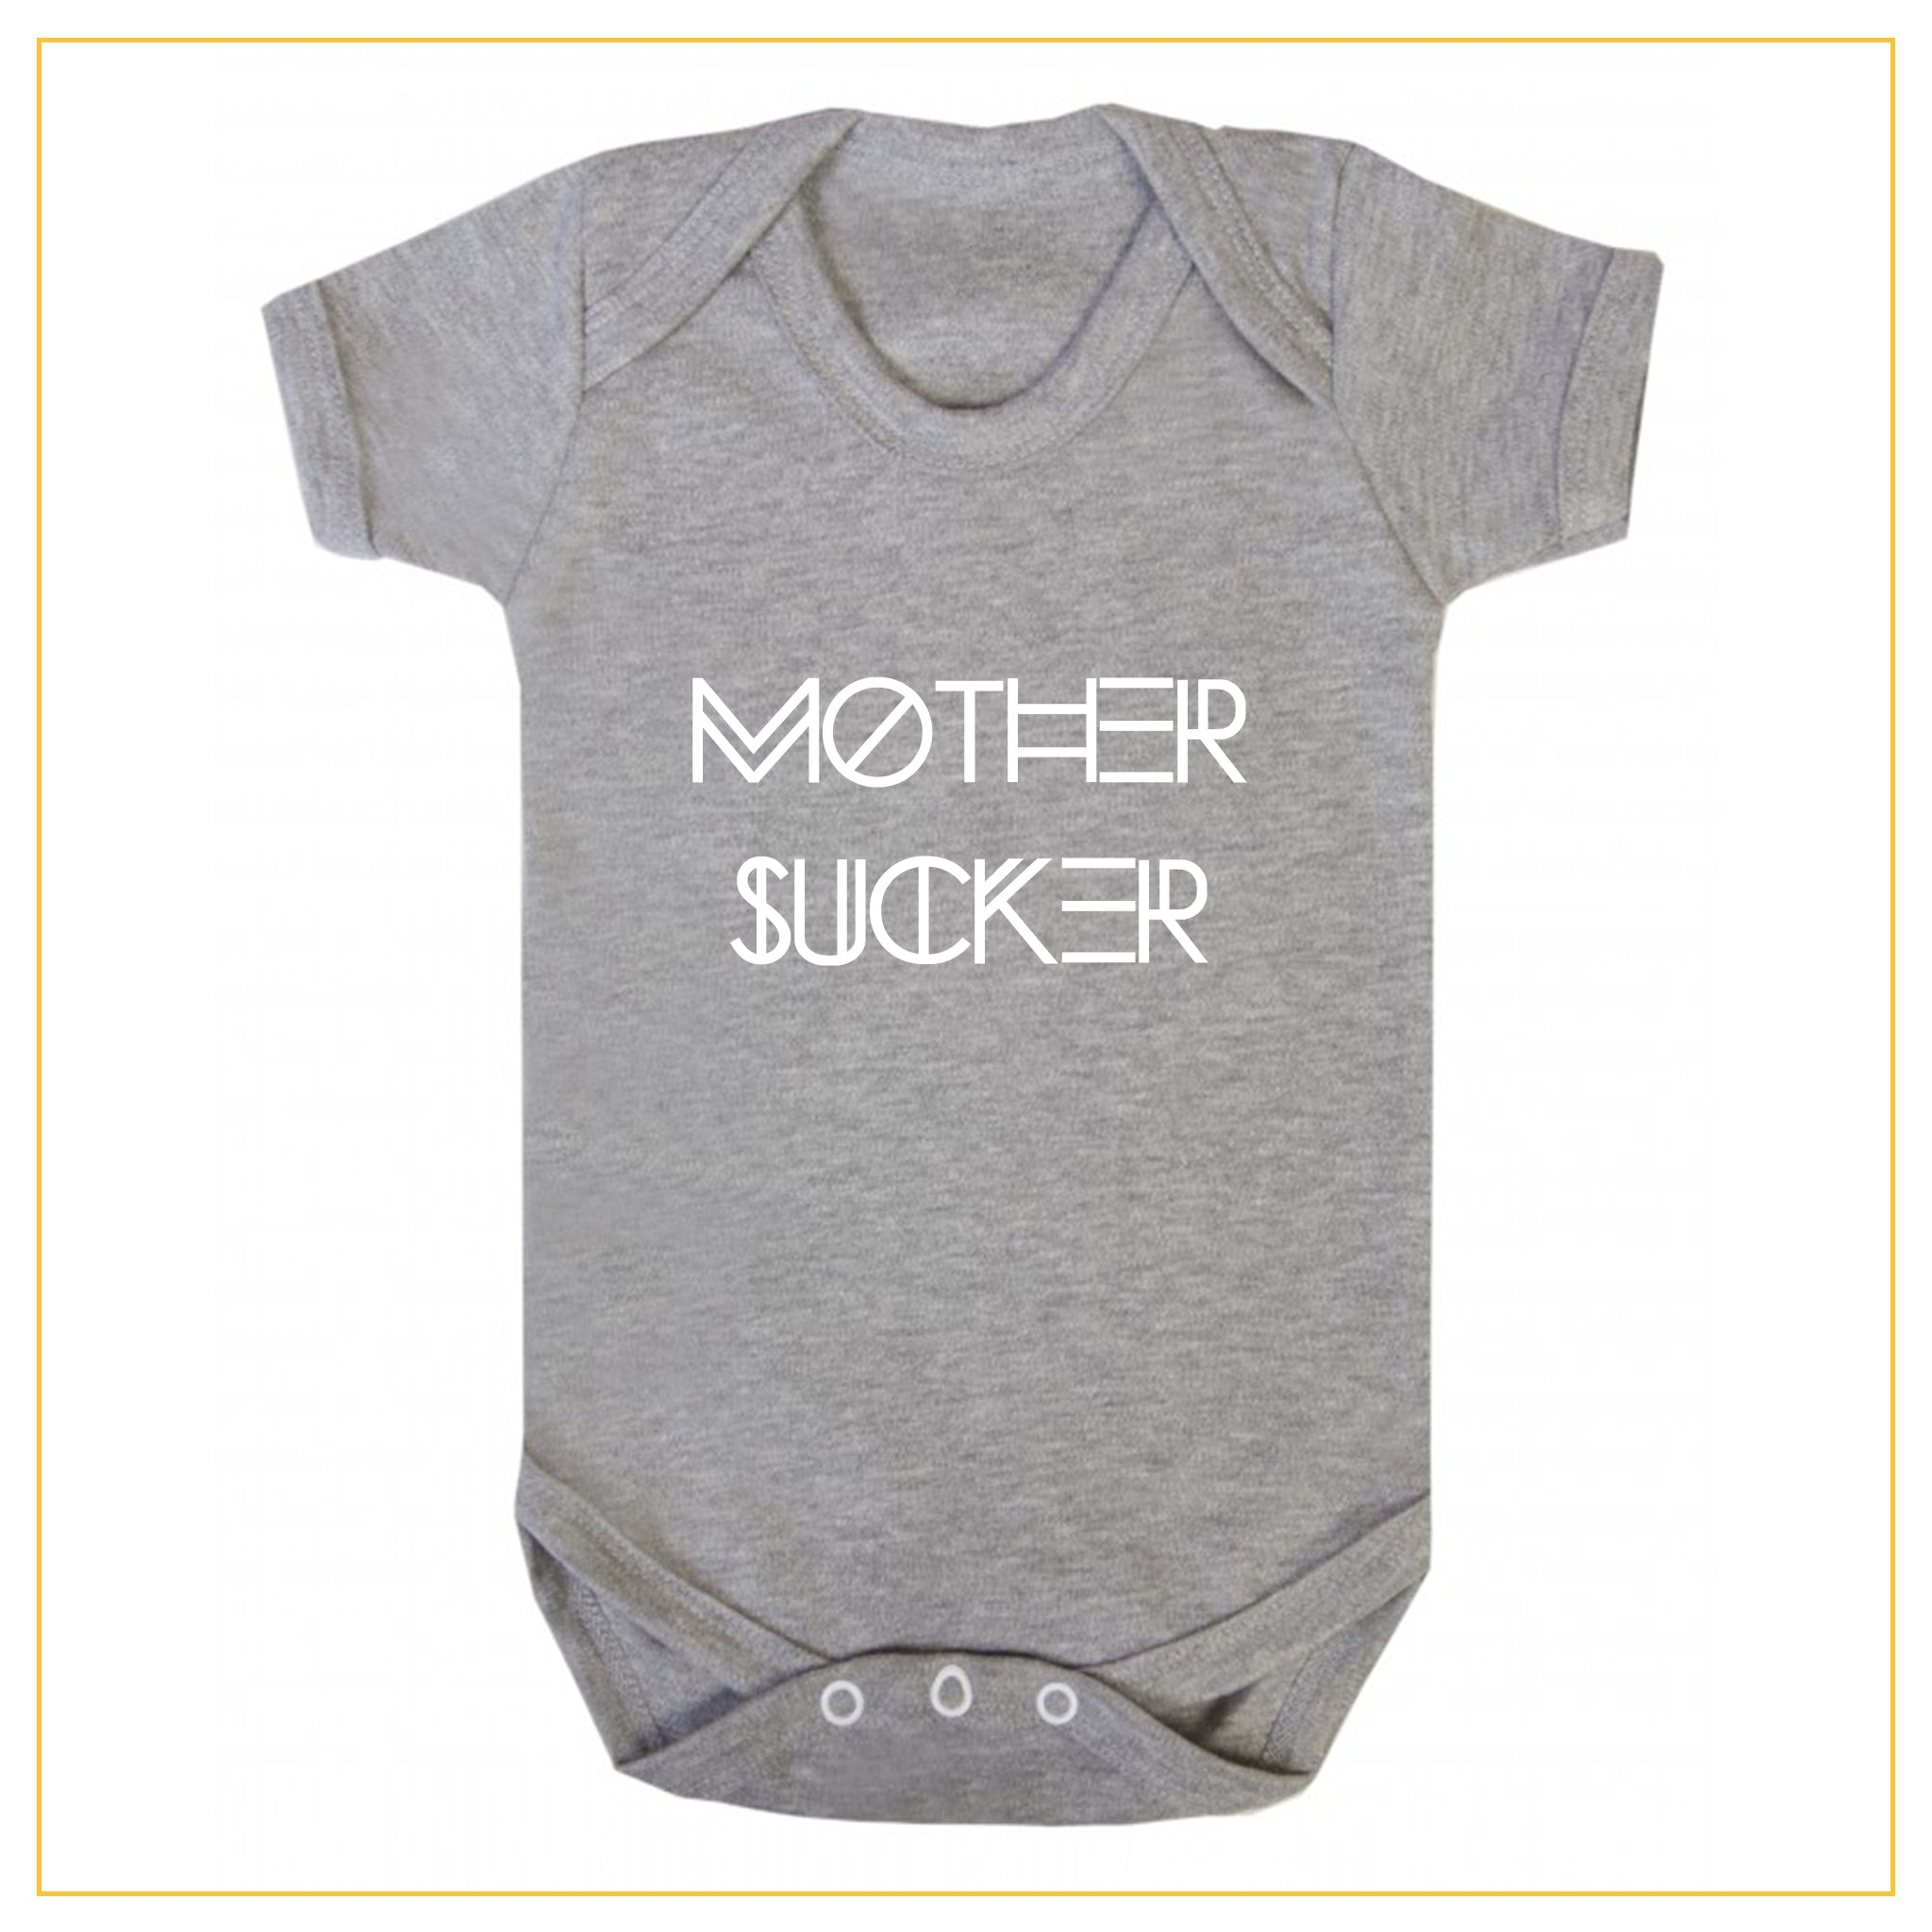 mother sucker novelty baby onesie in grey